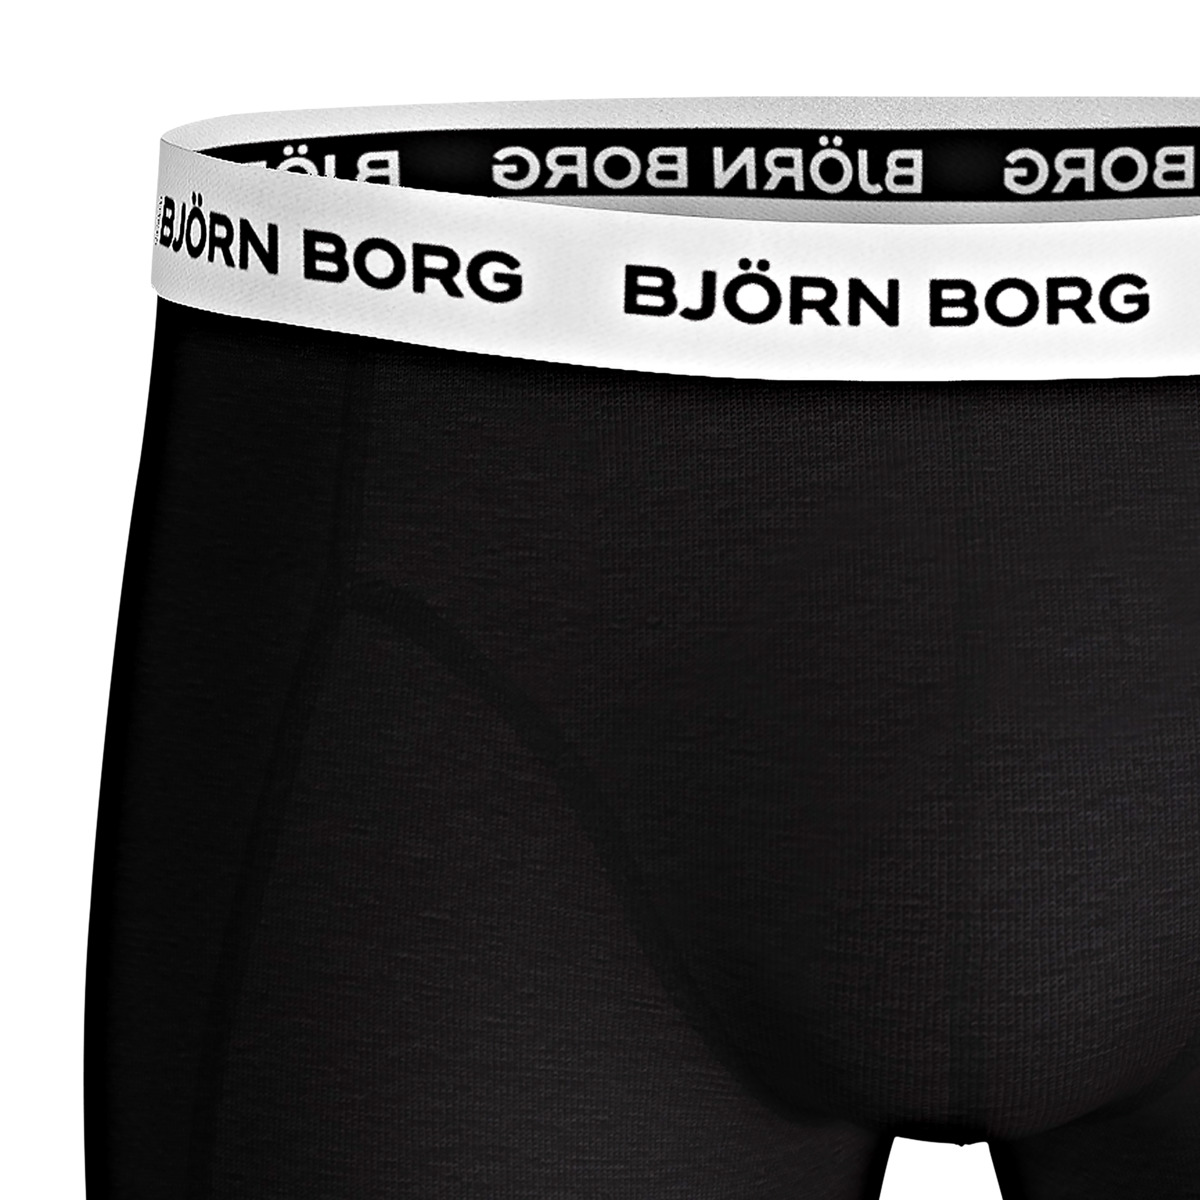 Björn Borg Contrast Solid Sammy 3er Pack Boxershorts schwarz